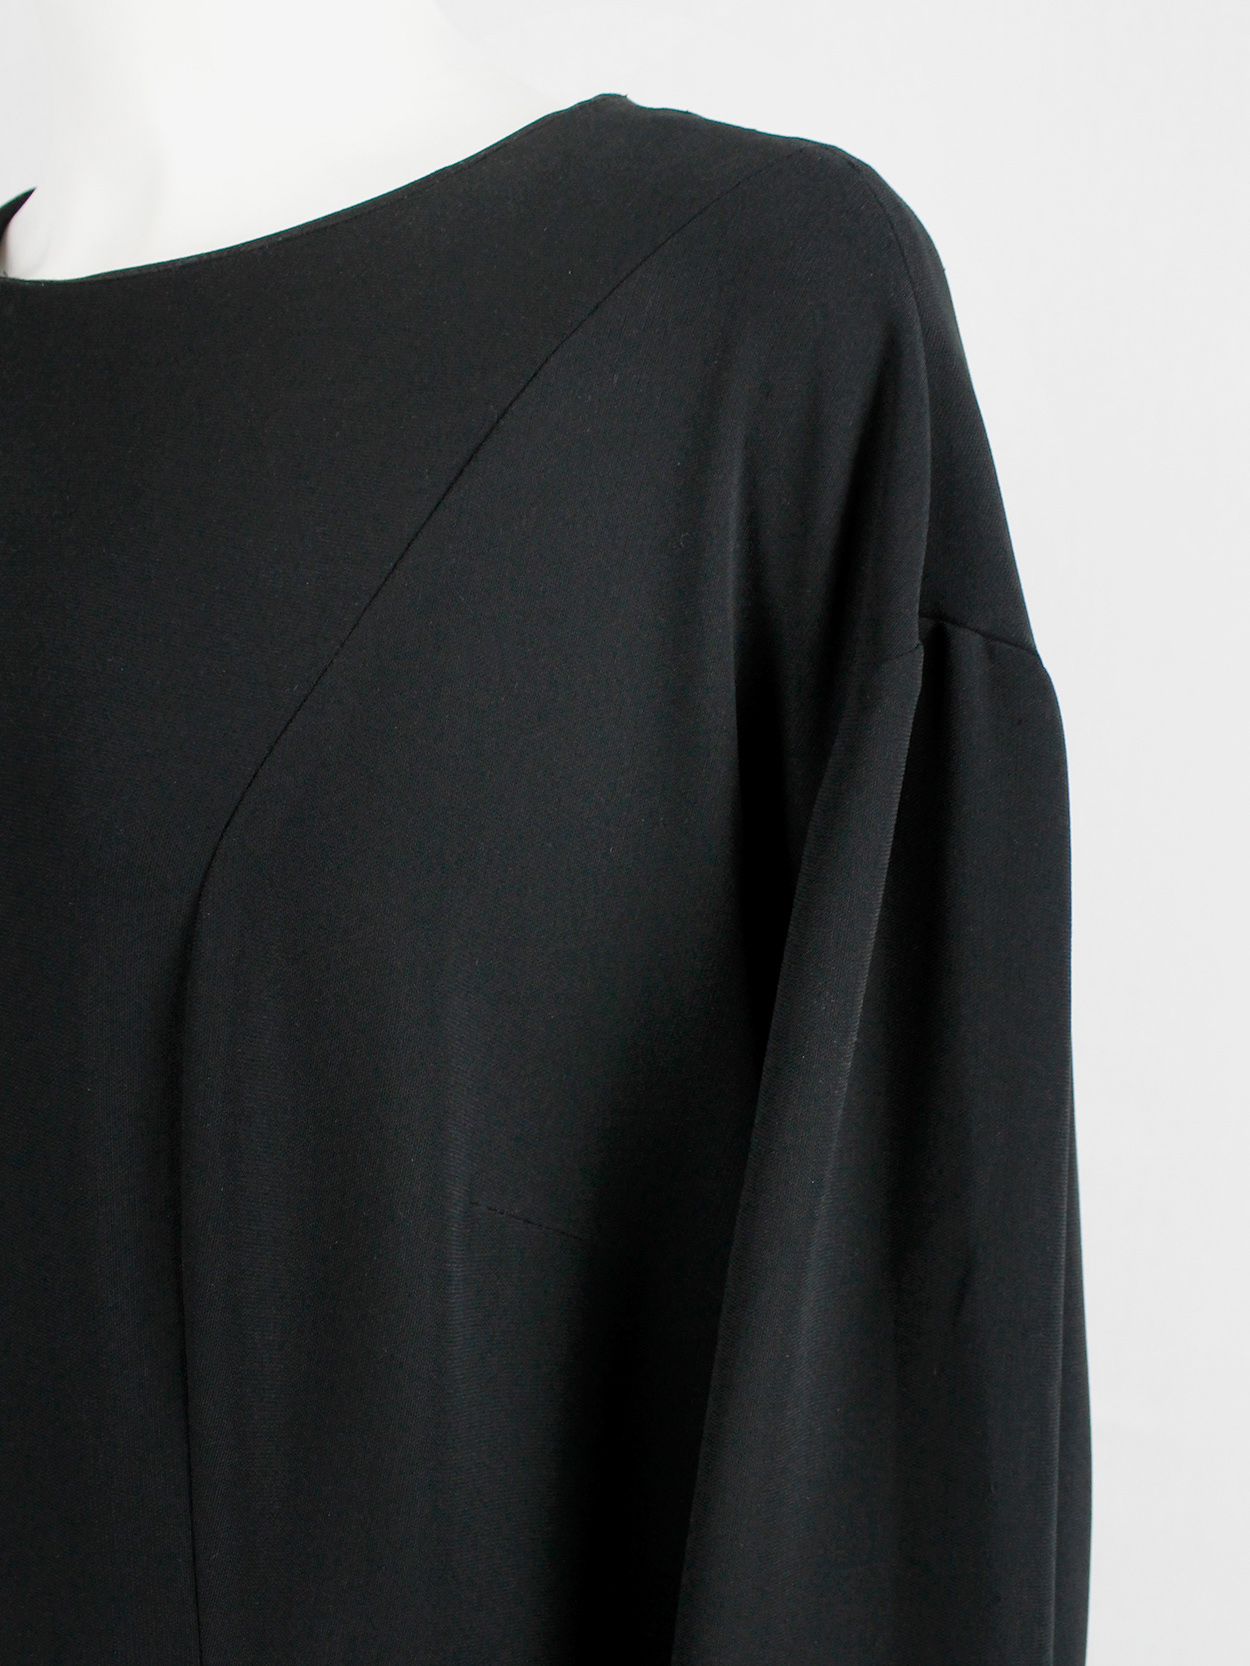 Maison Martin Margiela black extremely oversized dress in a size 64 ...